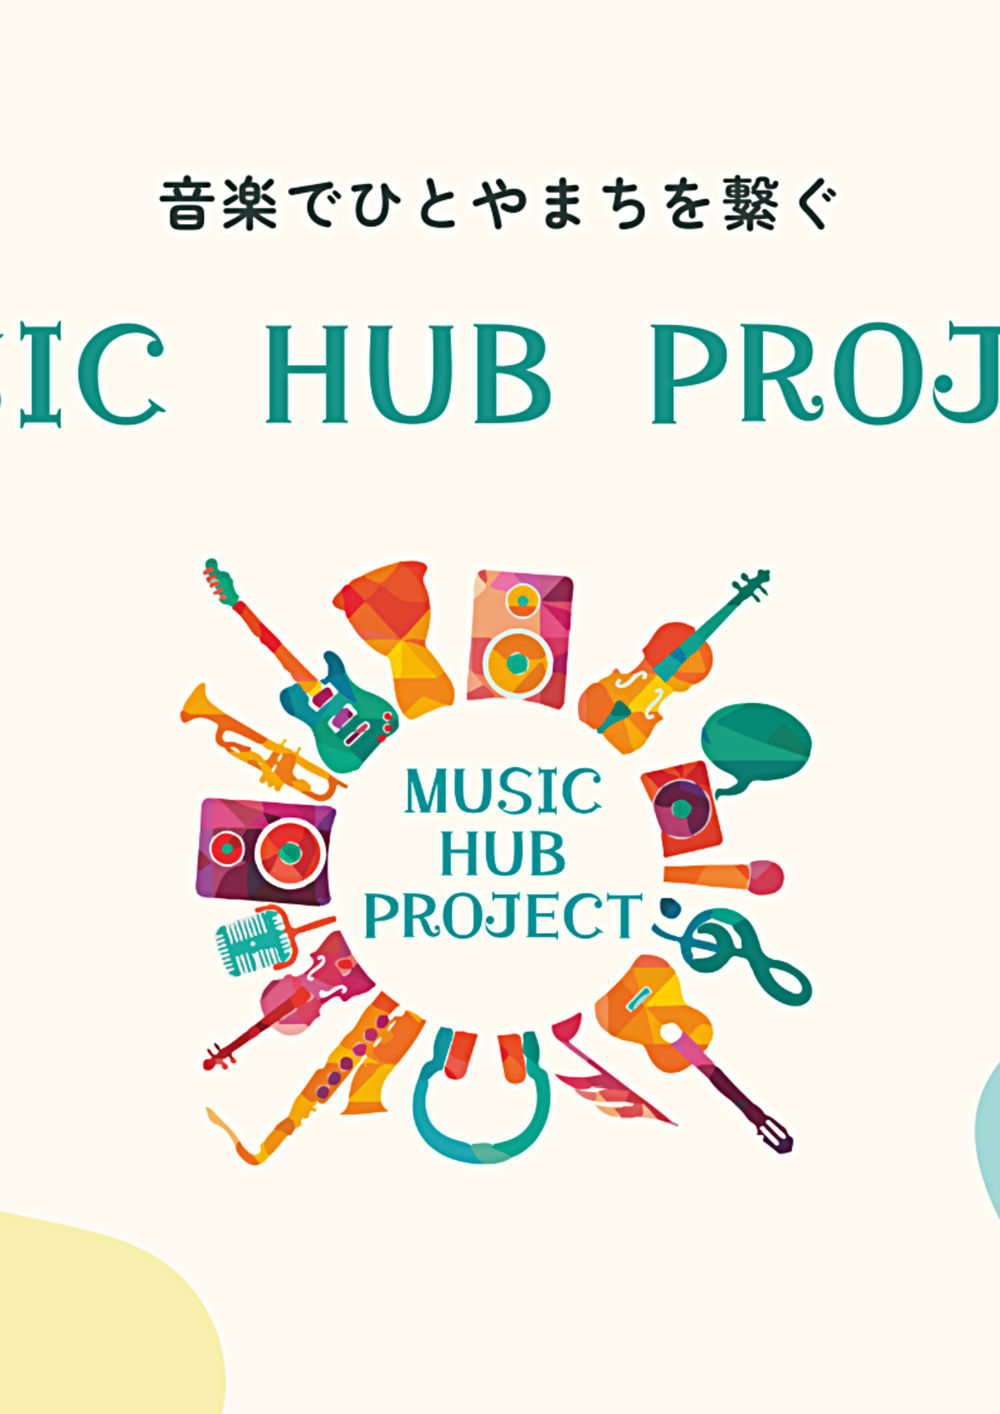 MUSIC HUB PROJECTホームページ